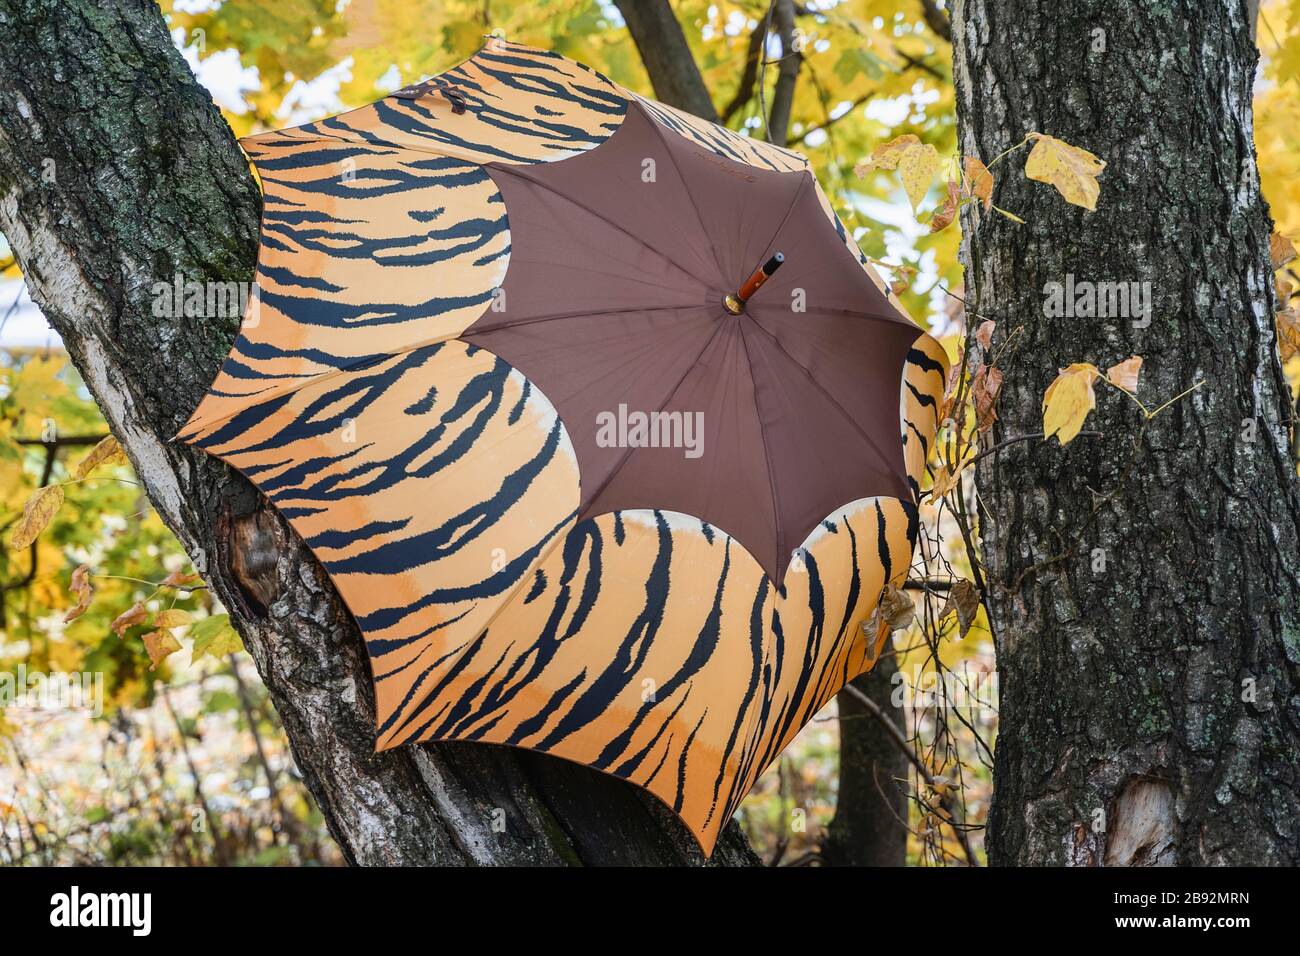 Apri un ombrello luminoso primo piano sui rami di albero nel parco, paesaggio autunnale, foglie cadute, foglie luminose e colorate. Stile di vita sano, attività all'aria aperta Foto Stock